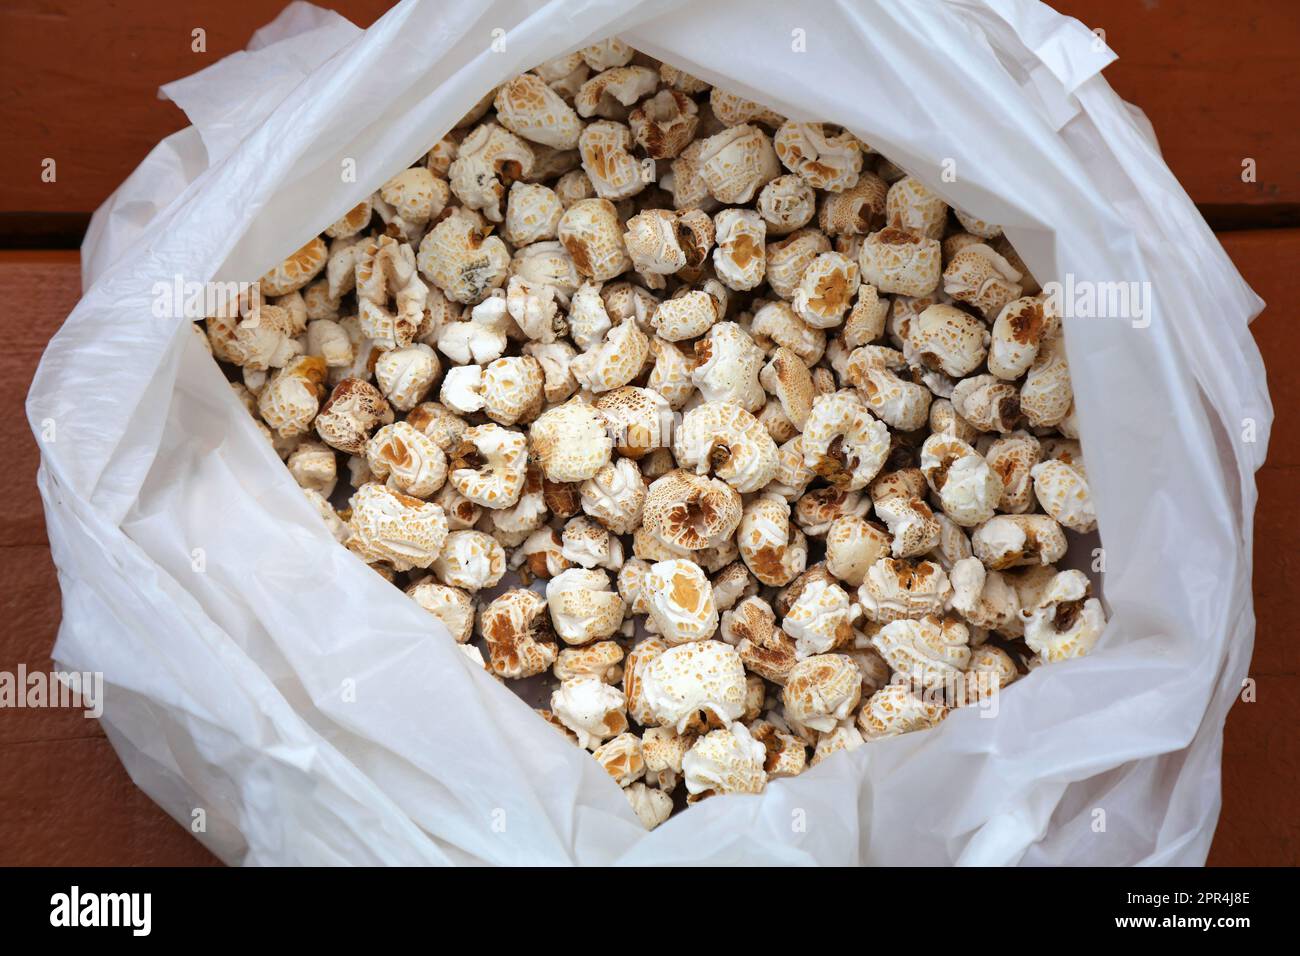 Popcorn coreano in un sacchetto. I chicchi di popcorn di stile coreano sono noti anche come popcorn di funghi. Foto Stock